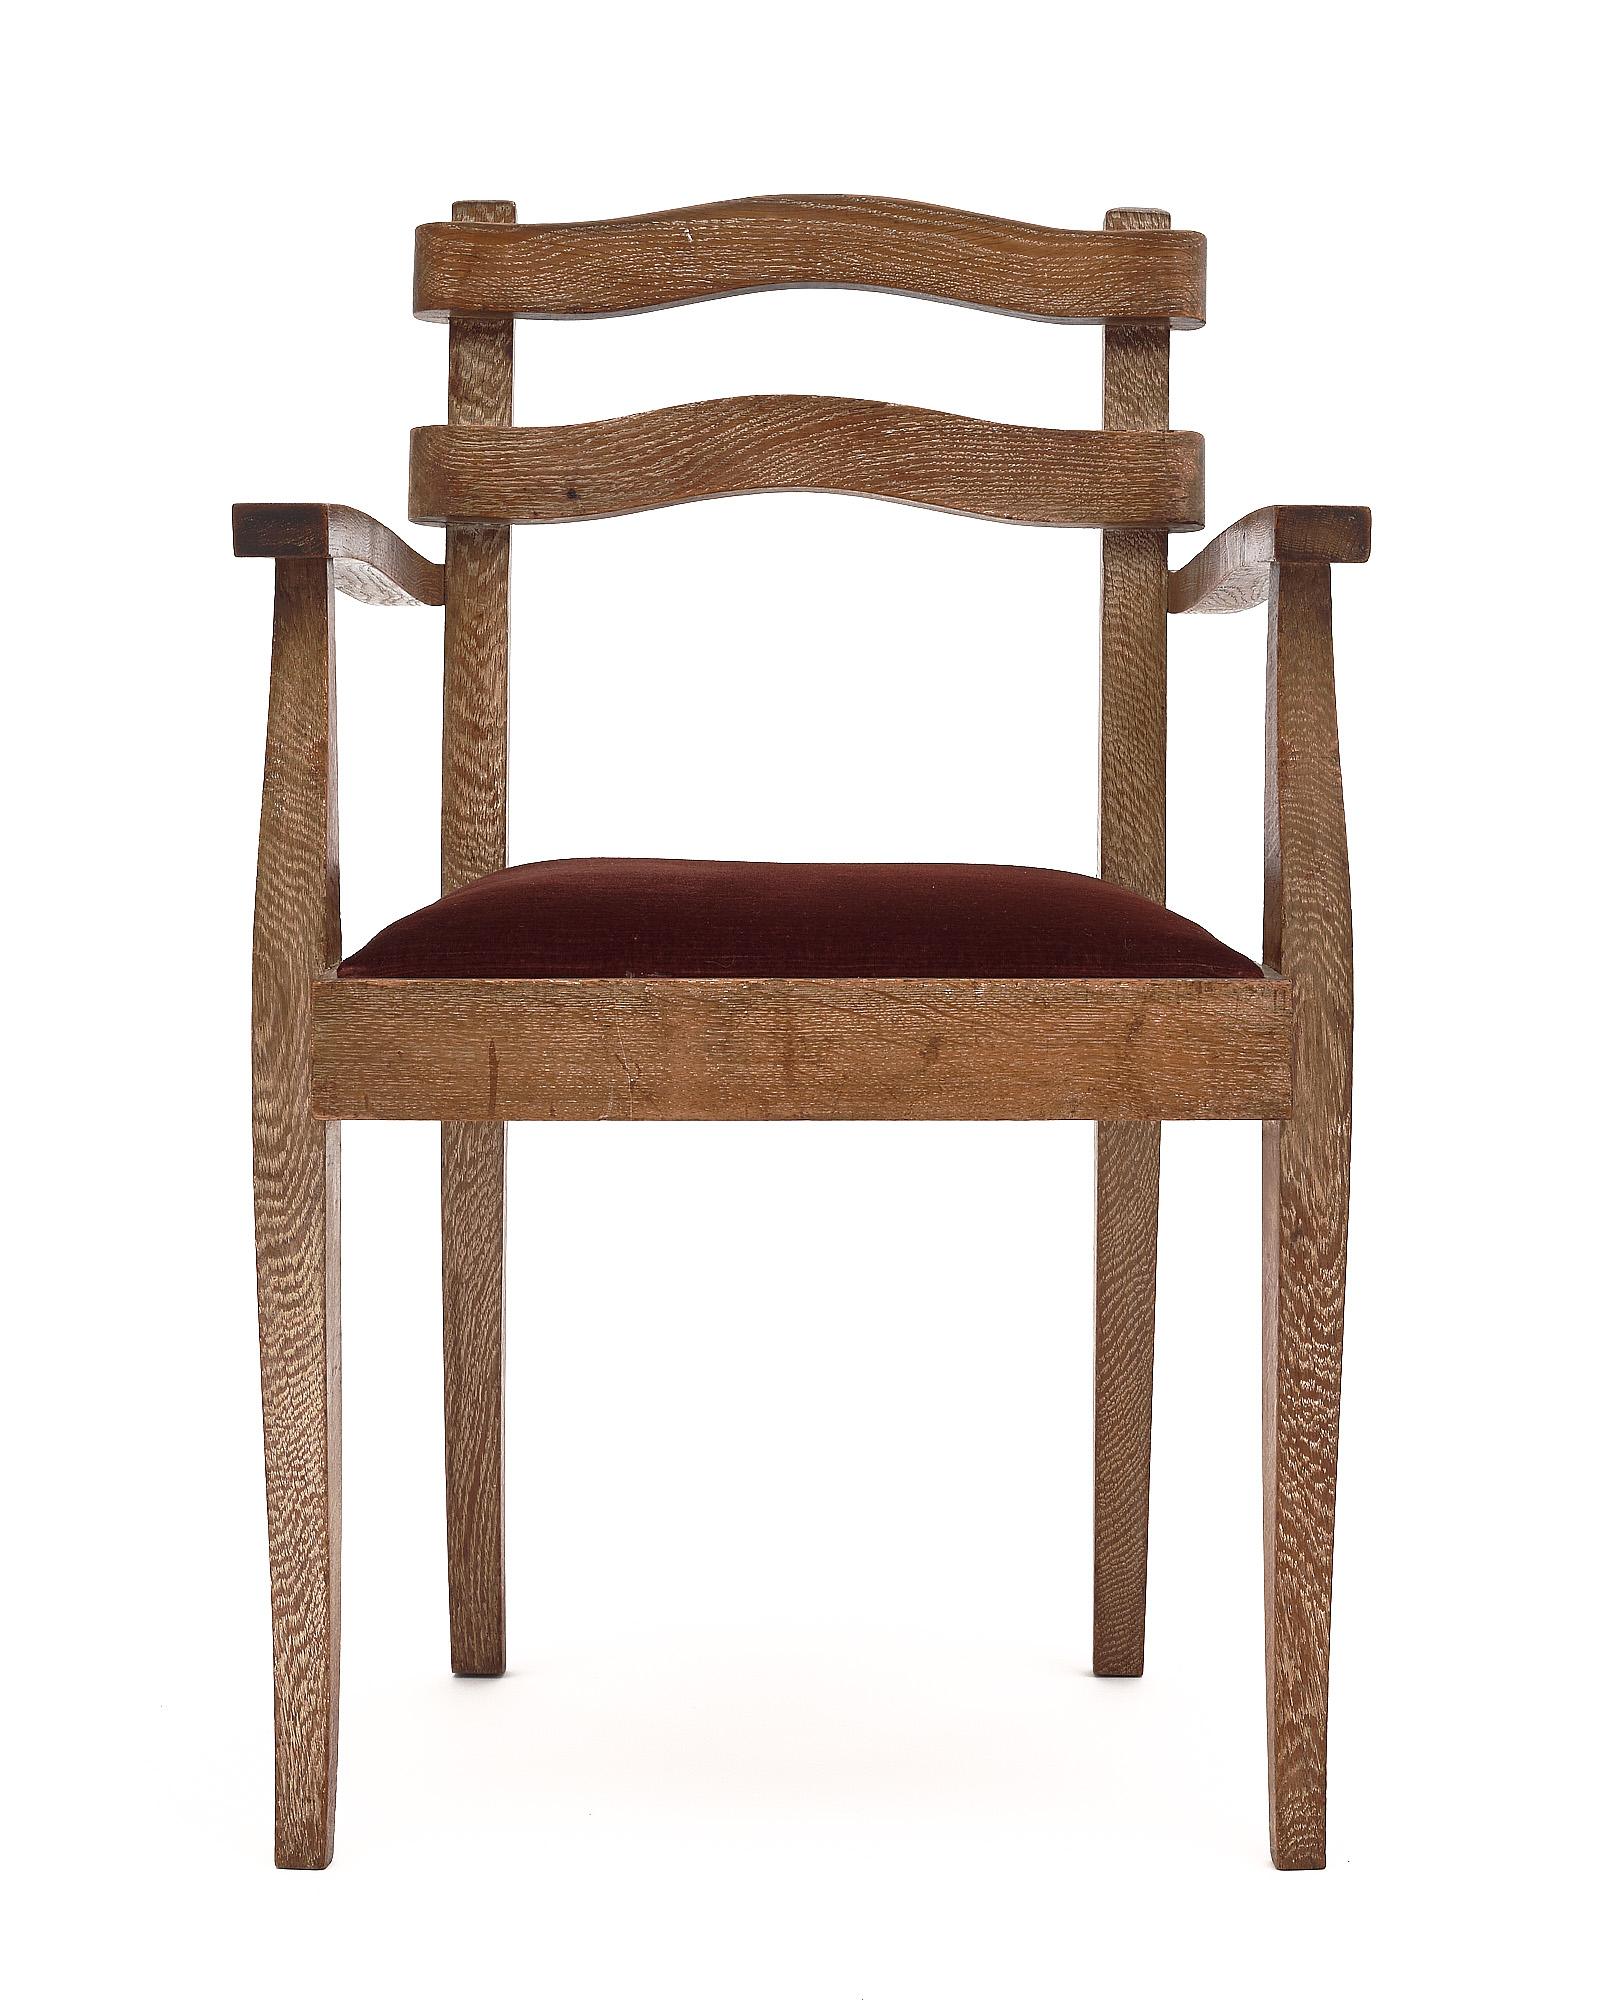 Satz von fünf Esszimmerstühlen mit Armlehnen. Diese Stühle sind aus massivem Eichenholz gefertigt und mit einer einzigartigen Keramikbeschichtung versehen. Die Sitze sind mit der originalen bordeauxfarbenen Samtmischung gepolstert.